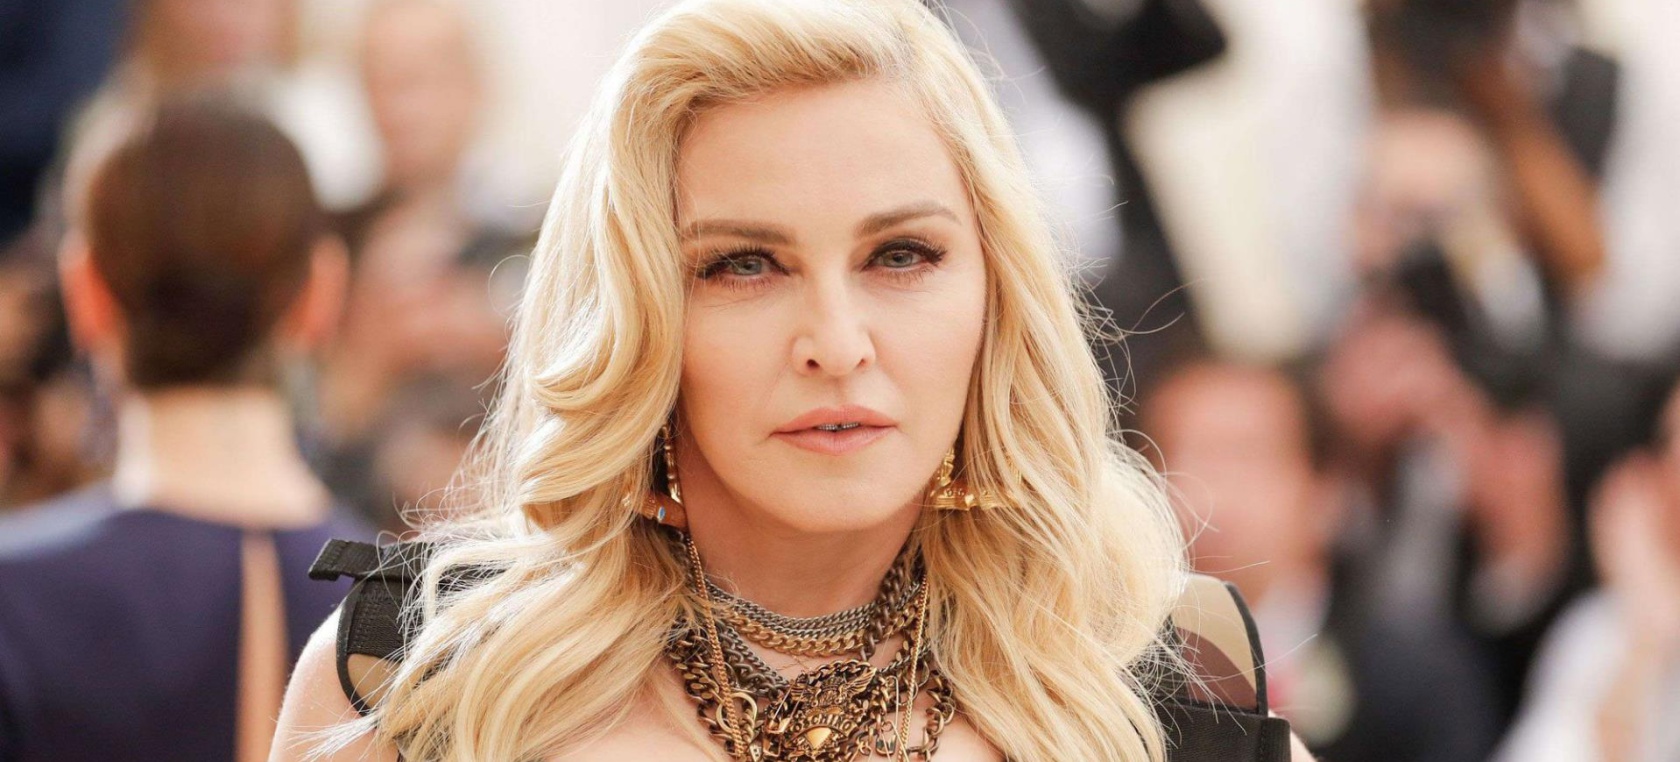 Subastarán varios artículos íntimos de Madonna